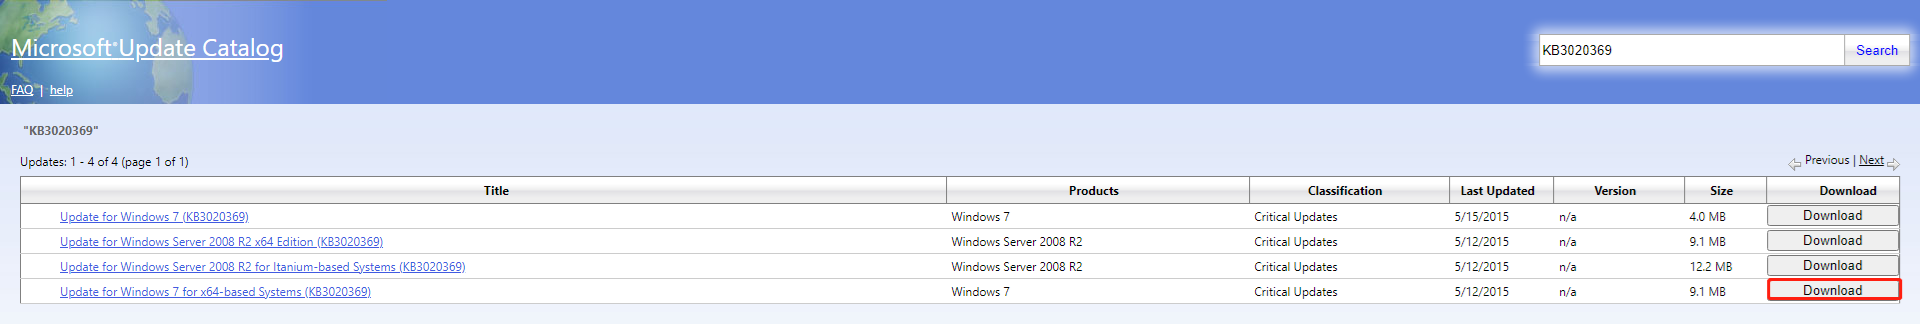 windows update service pack 2